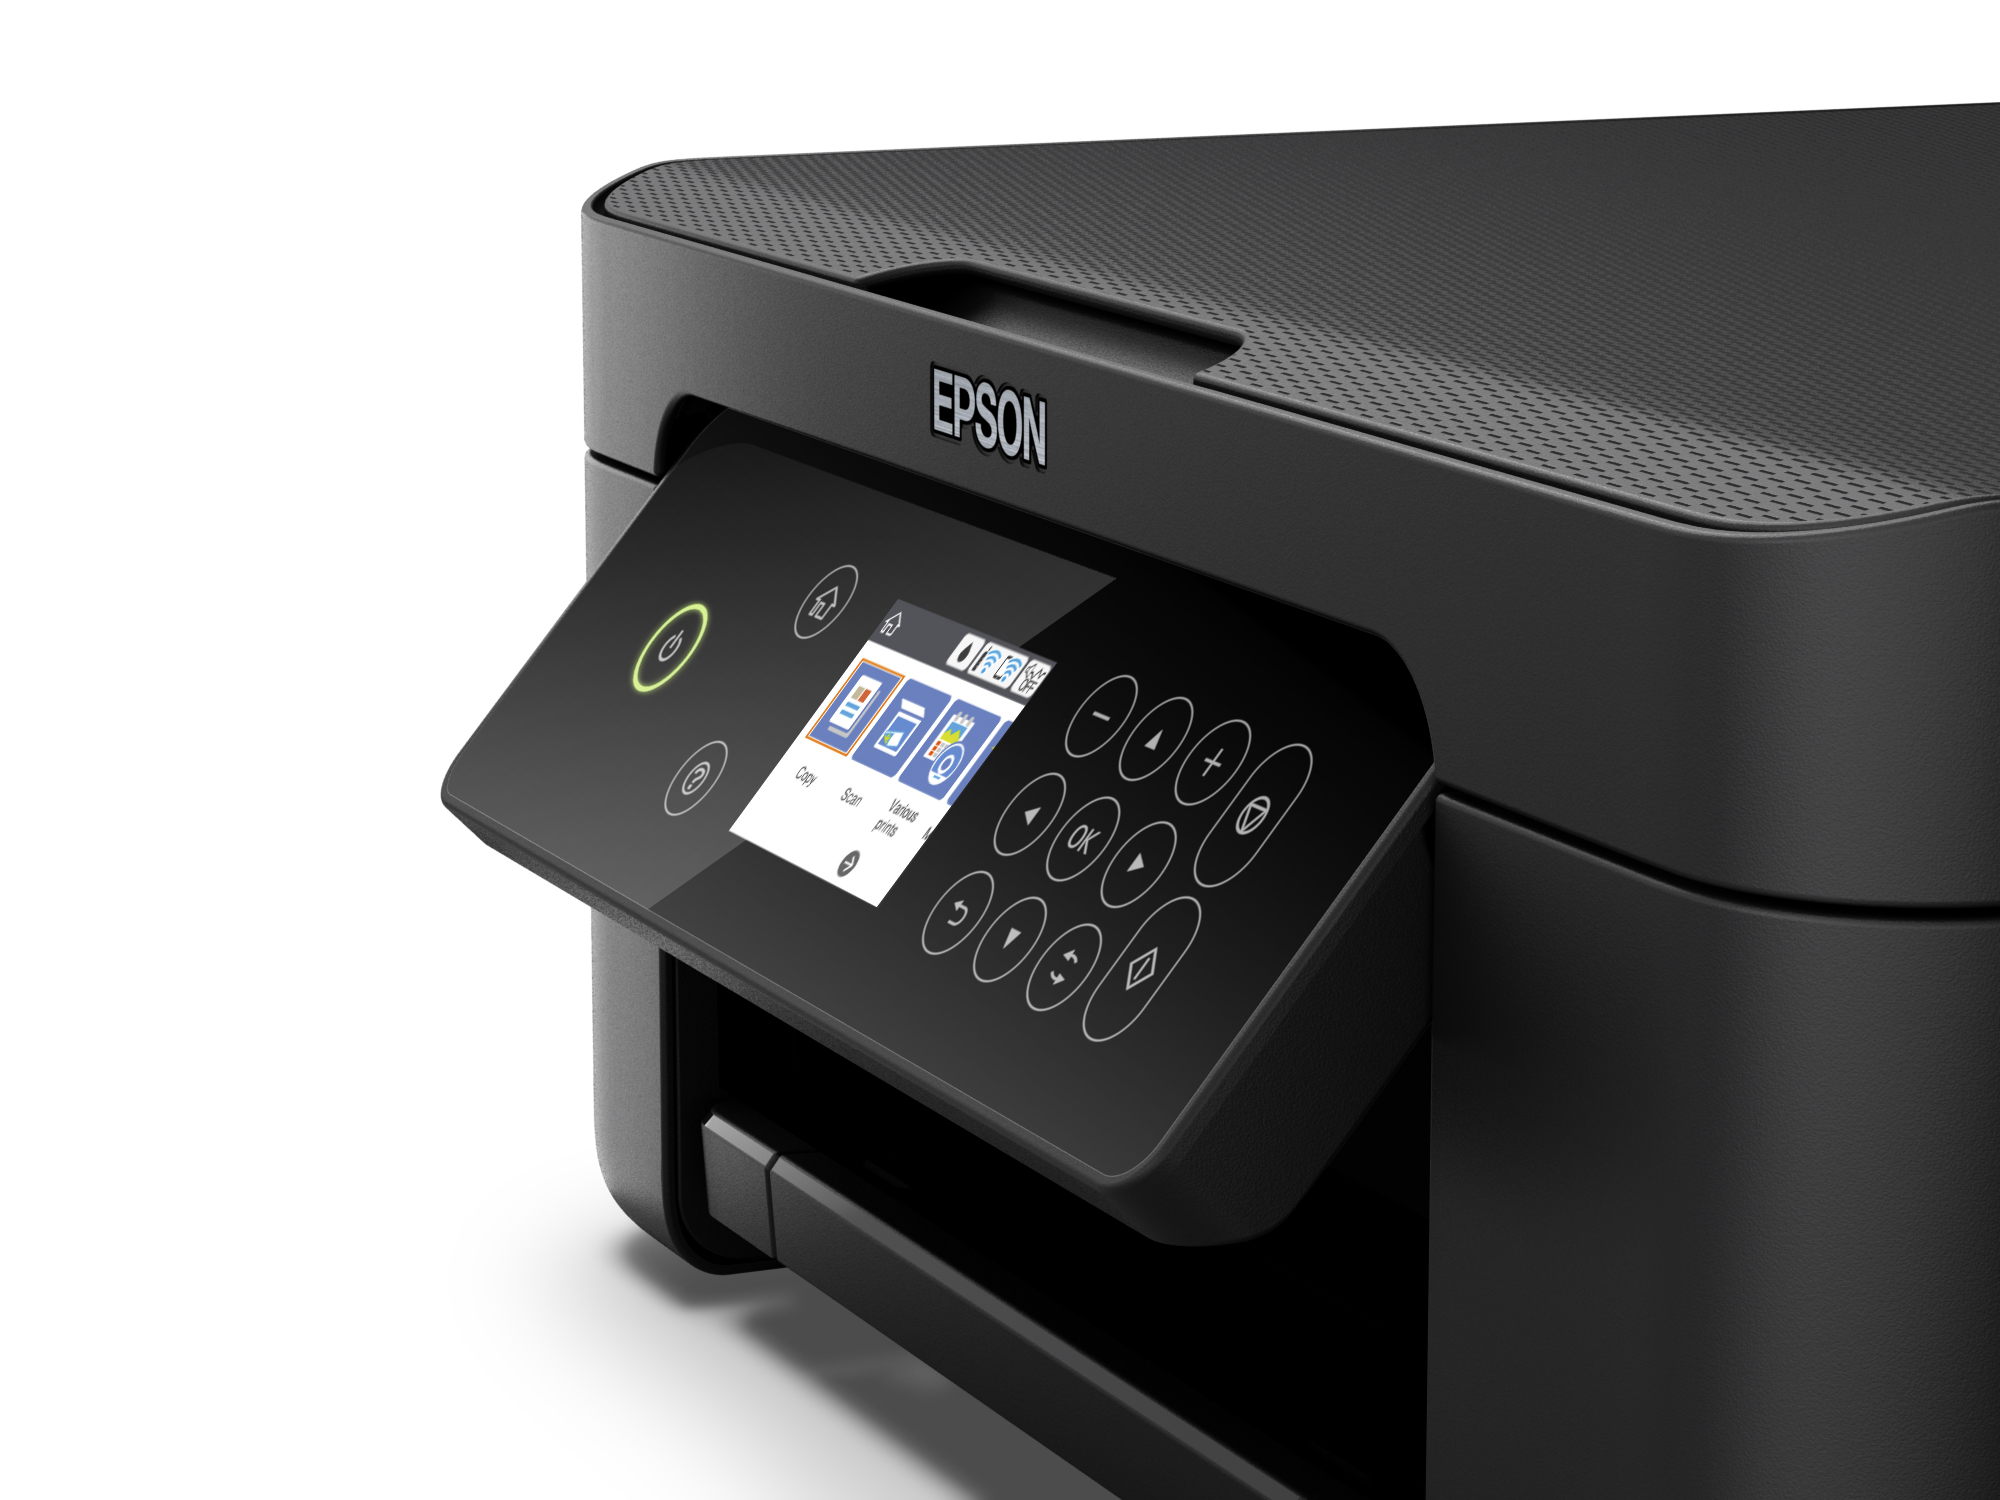  EPSON  XP  4100 Imprimante  multifonction 3 en 1 compact 